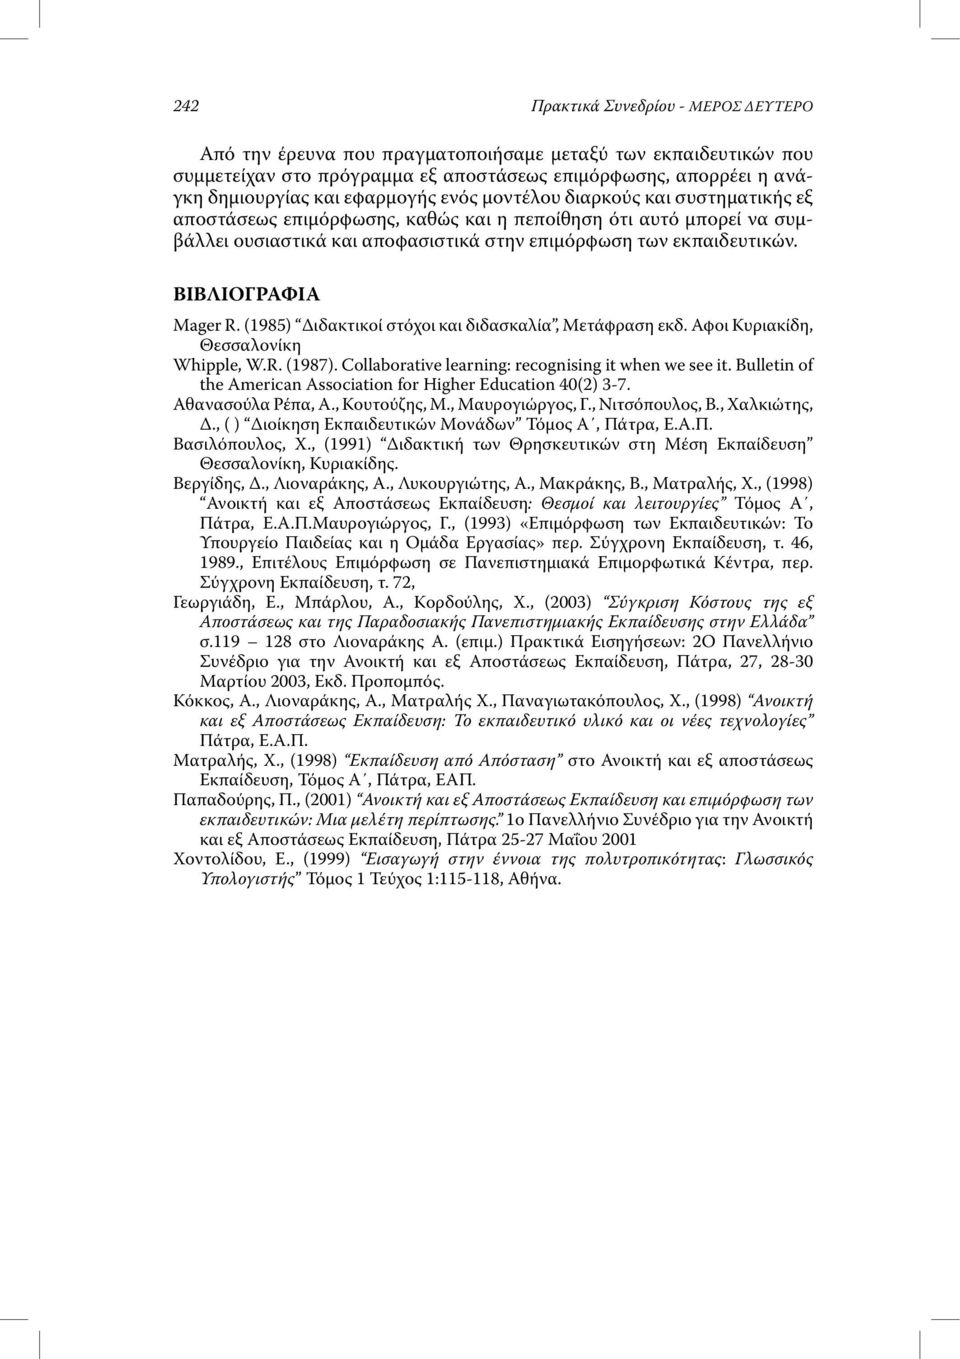 ΒΙΒΛΙΟΓΡΑΦΙΑ Mager R. (1985) ιδακτικοί στόχοι και διδασκαλία, Μετάφραση εκδ. Αφοι Κυριακίδη, Θεσσαλονίκη Whipple, W.R. (1987). Collaborative learning: recognising it when we see it.